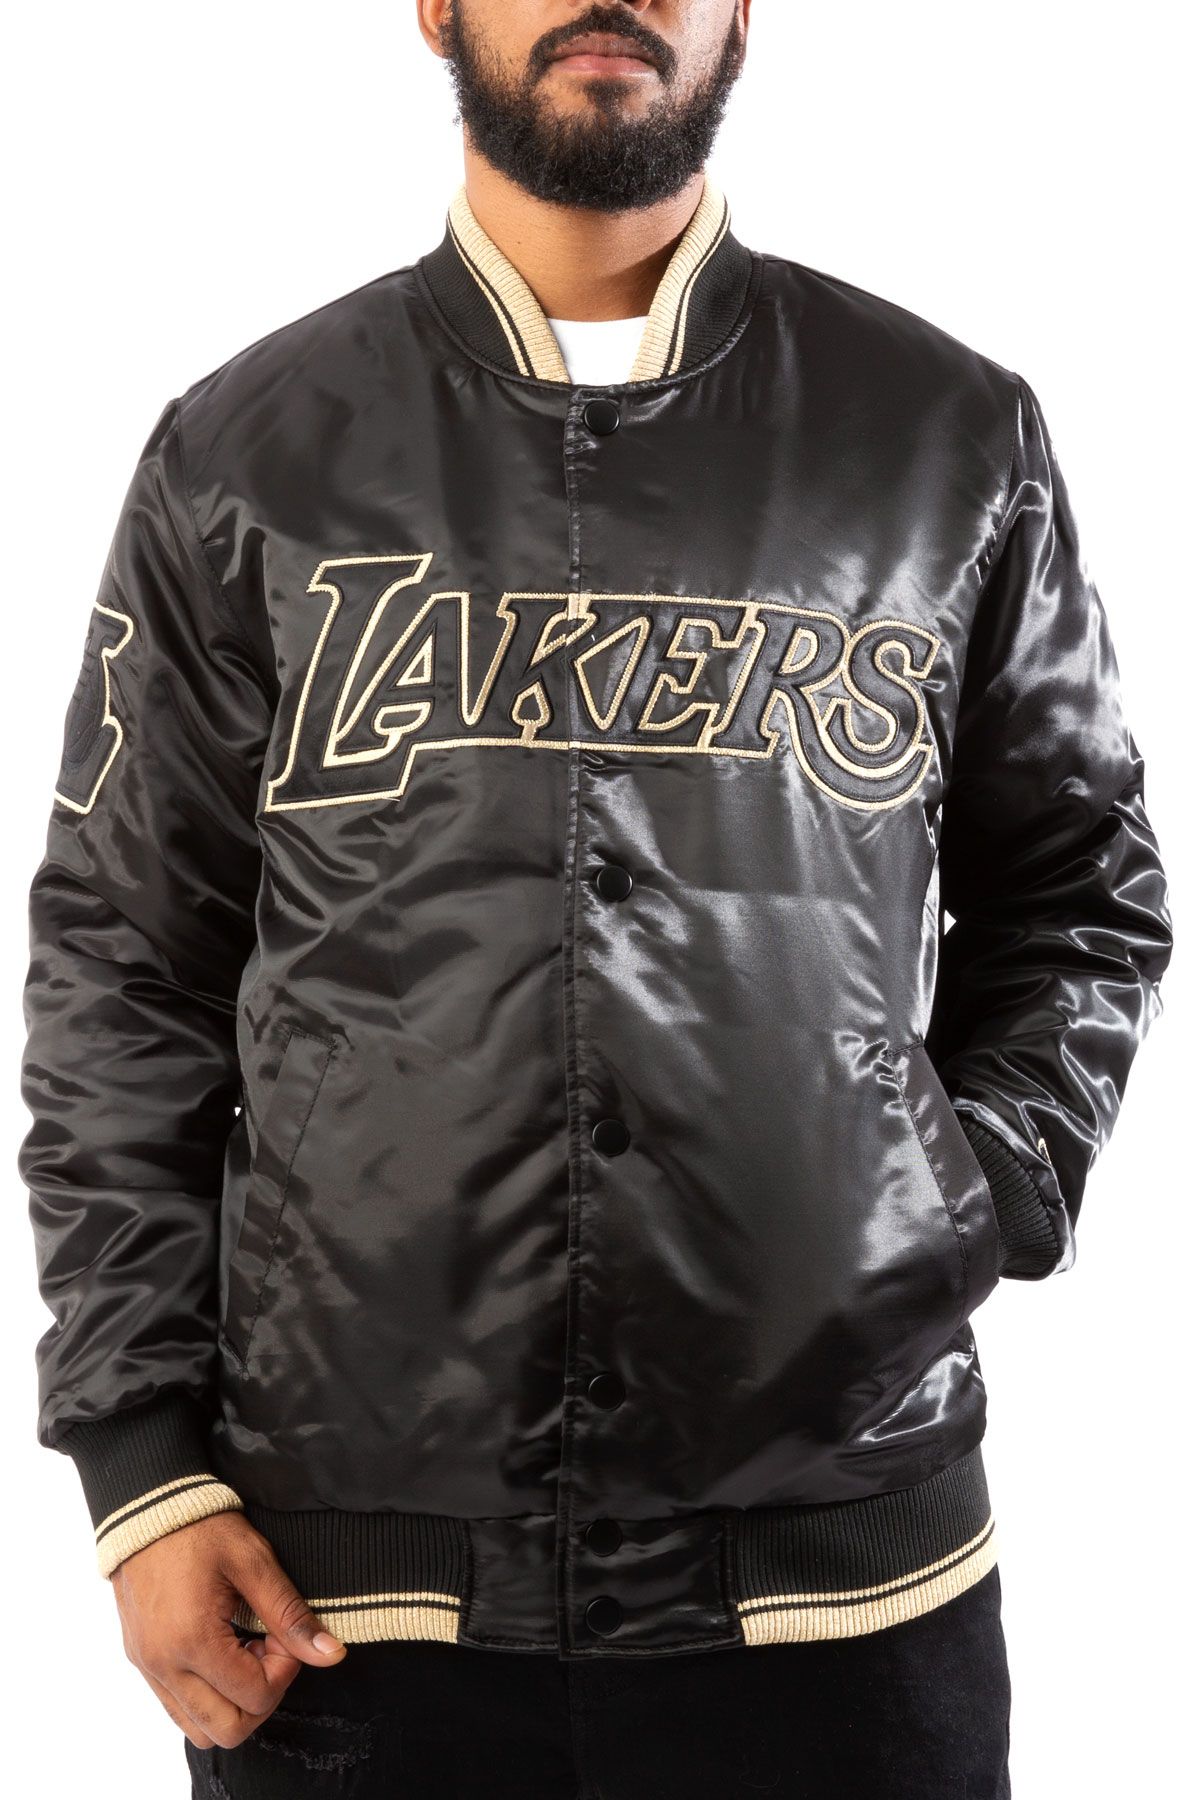 Starter Bomber Black/Gold Los Angeles Lakers Jacket - HJacket